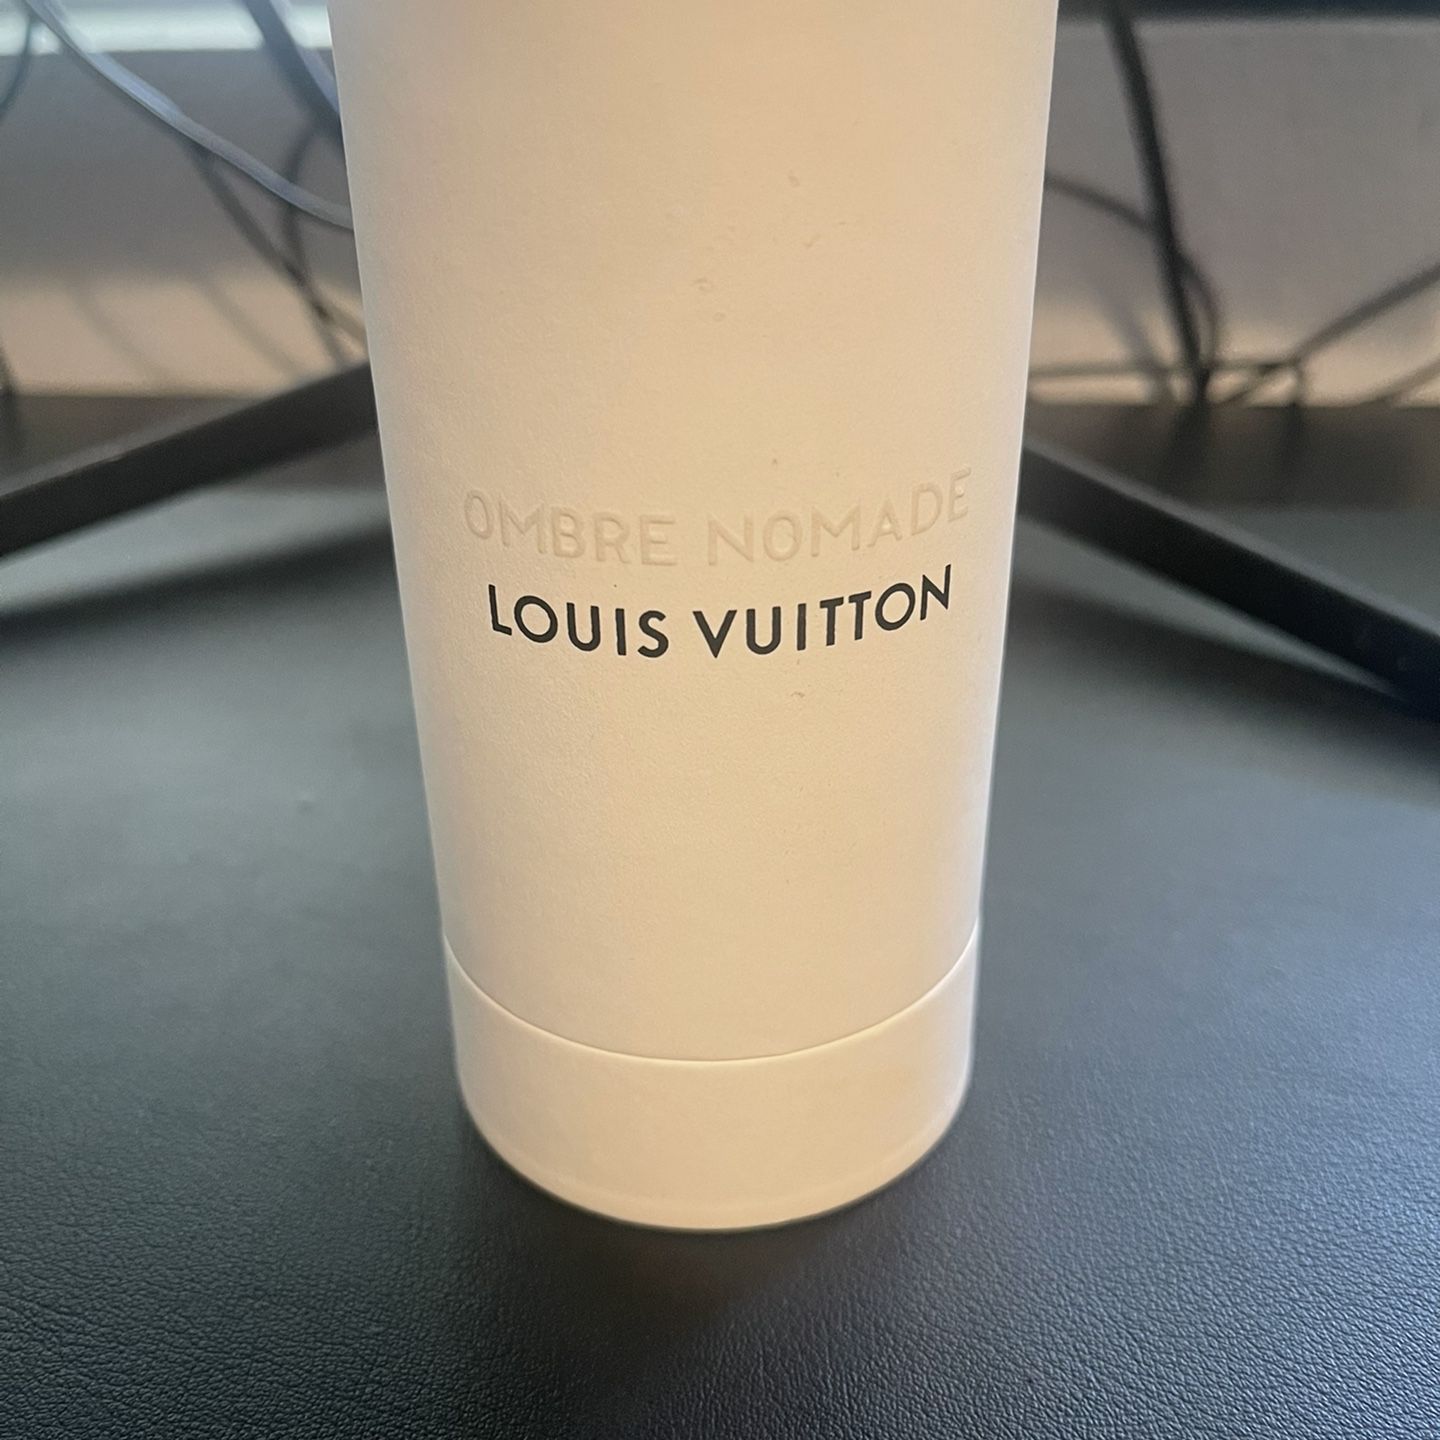 Louis Vuitton Ombré Nomade Eau De Parfum for Sale in Baldwin Hills, CA -  OfferUp